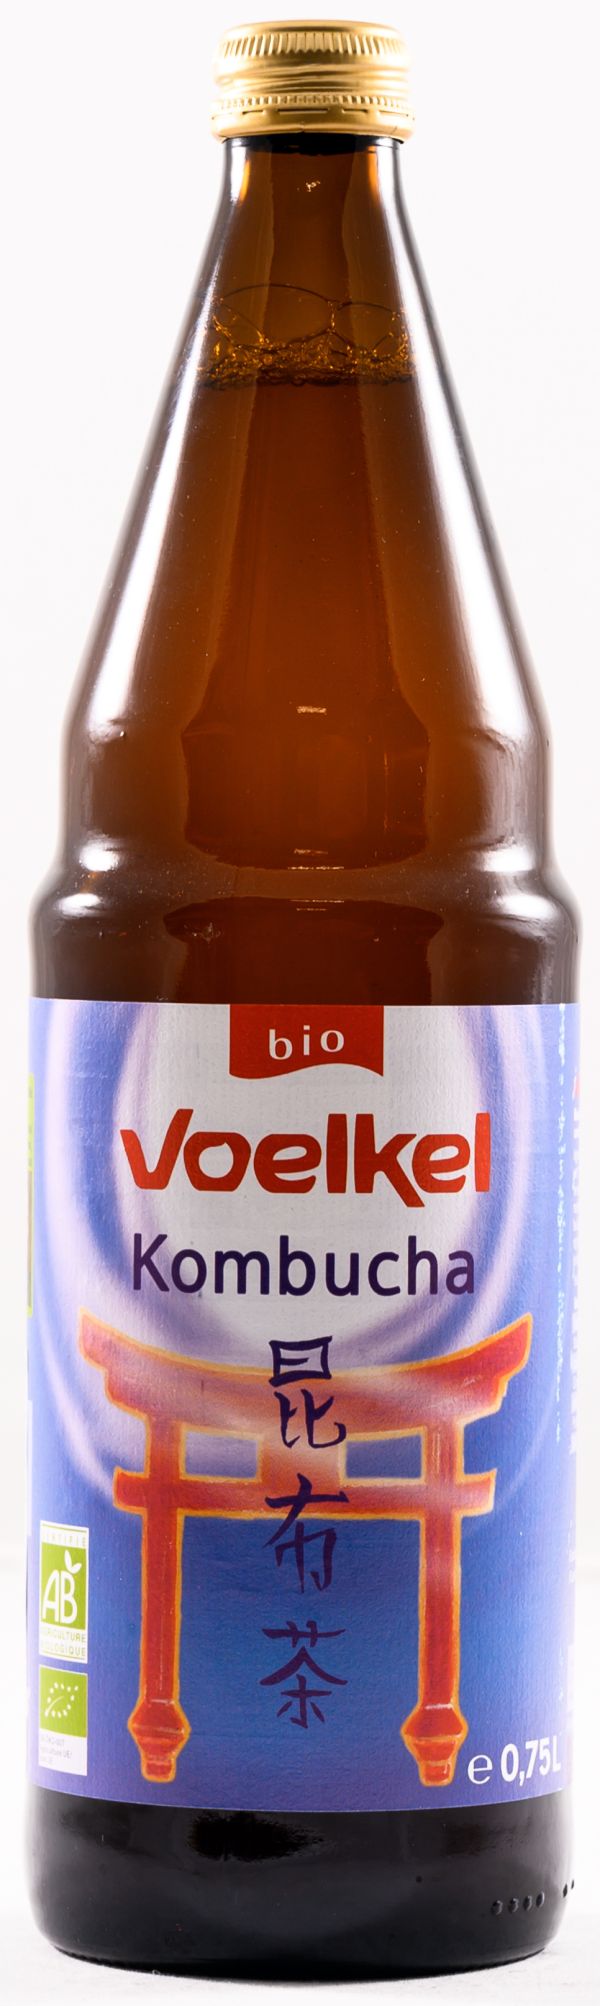 Κομπούχα "Kombucha" BIO